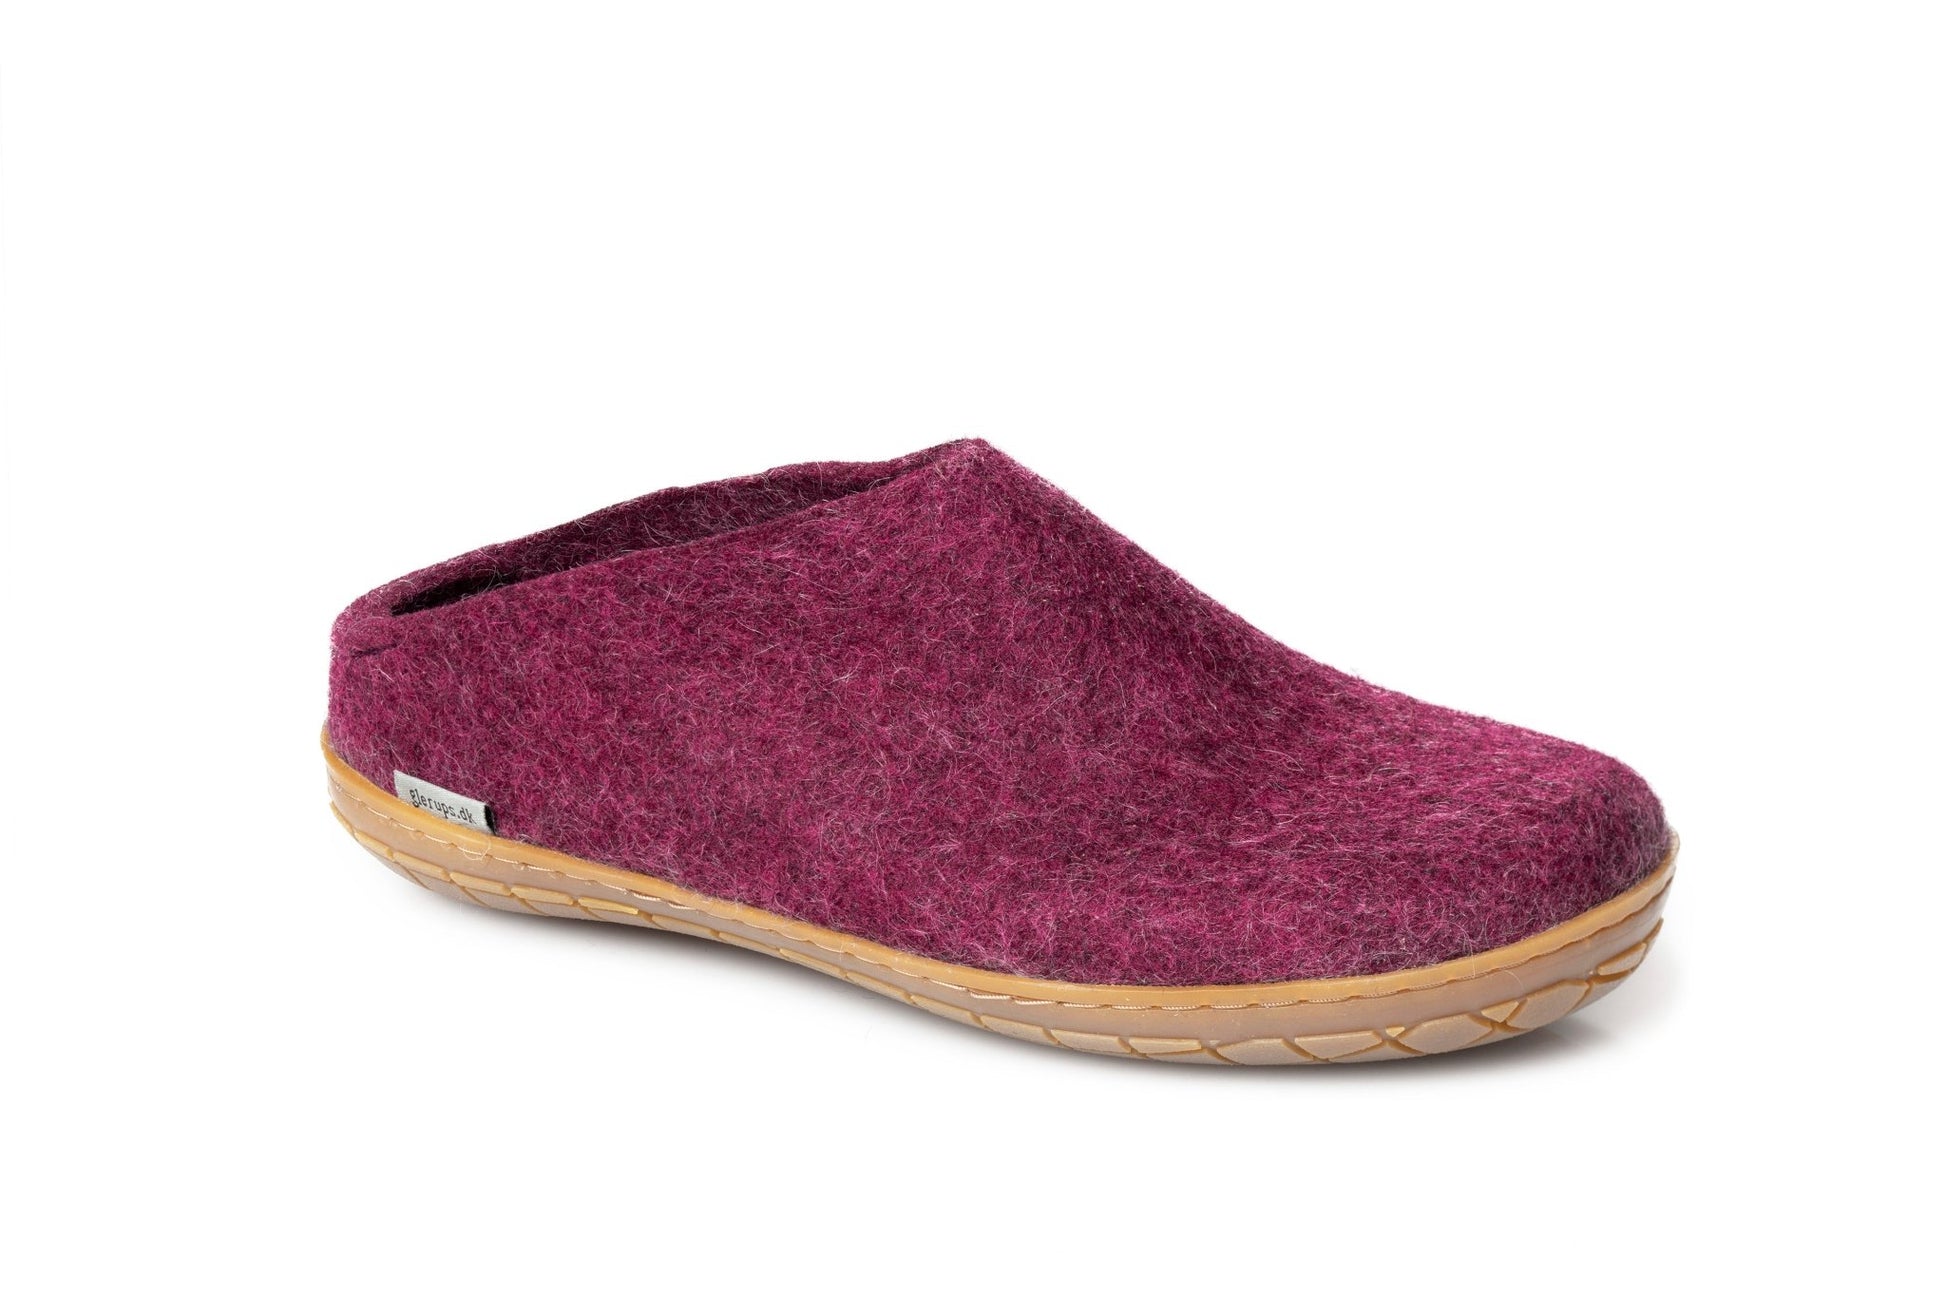 Glerups Slip-On Rubber Sole Cranberry - Grady’s Feet Essentials - Glerups